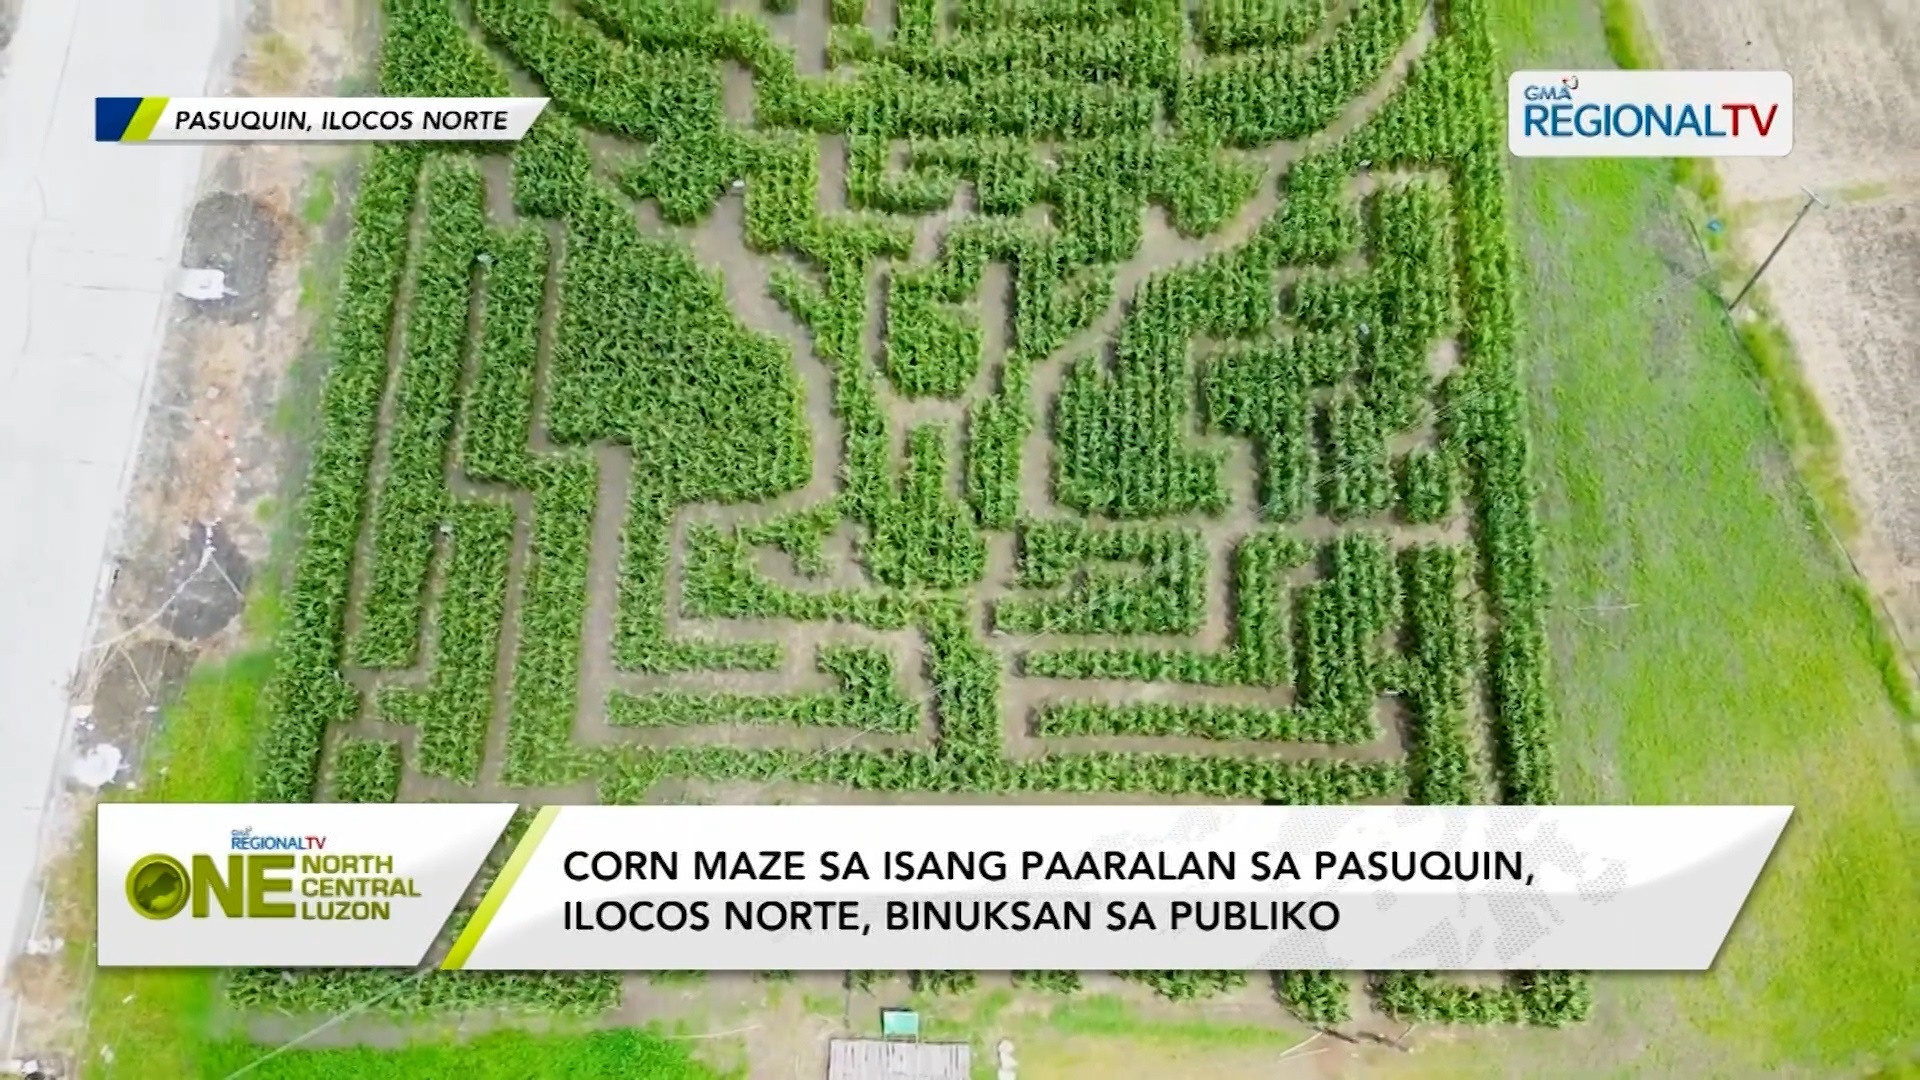 Corn maze, perfect na pasyalan ng mga adventure-seeker